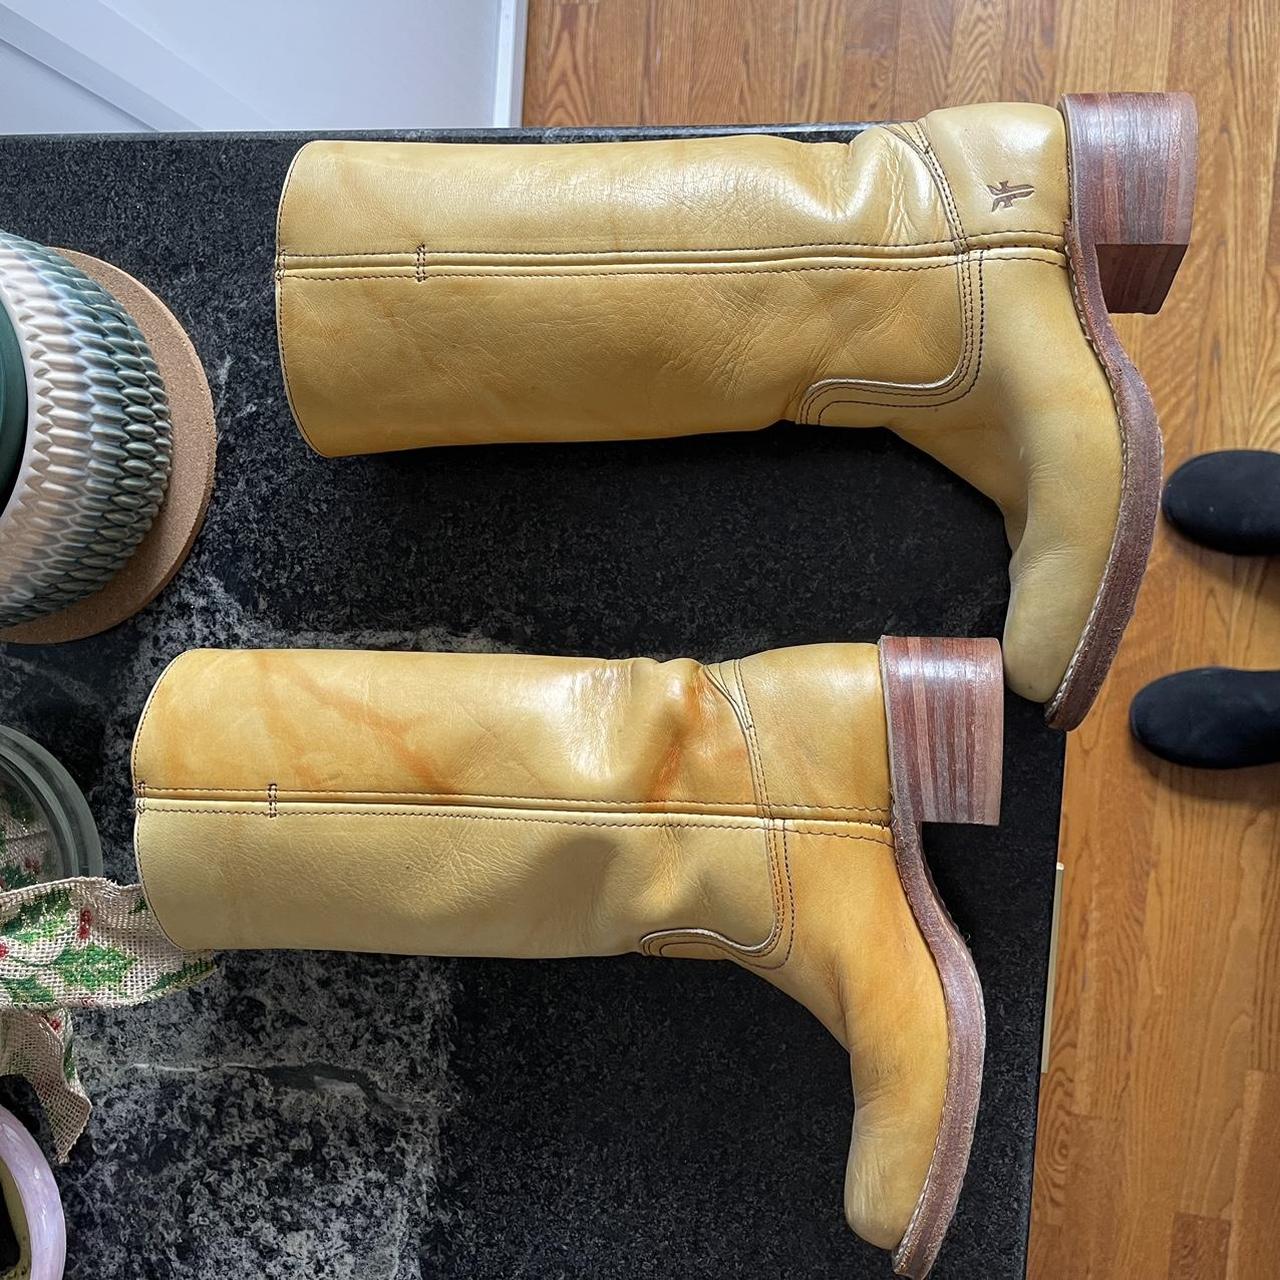 Frye Women's Boots (2)